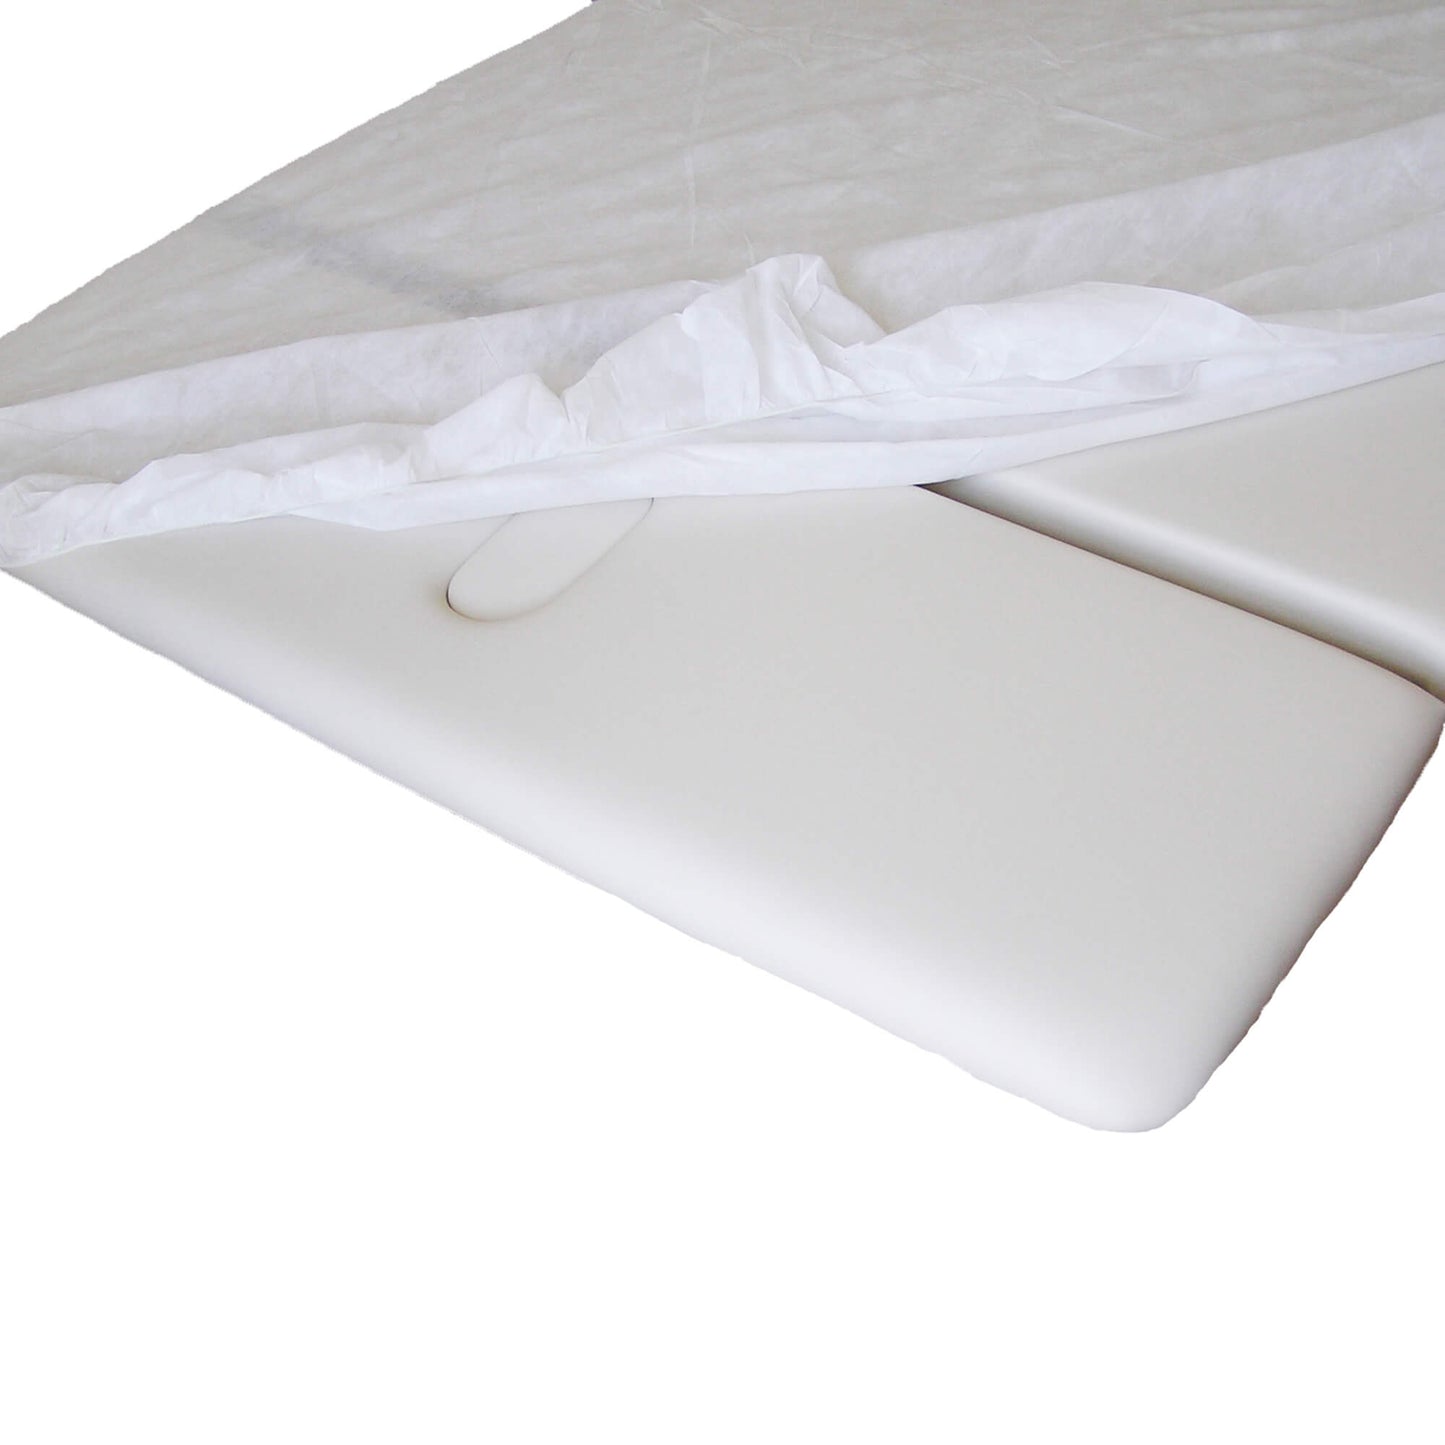 Disposable bed sheets with elastics ES022 - 75x200 cm